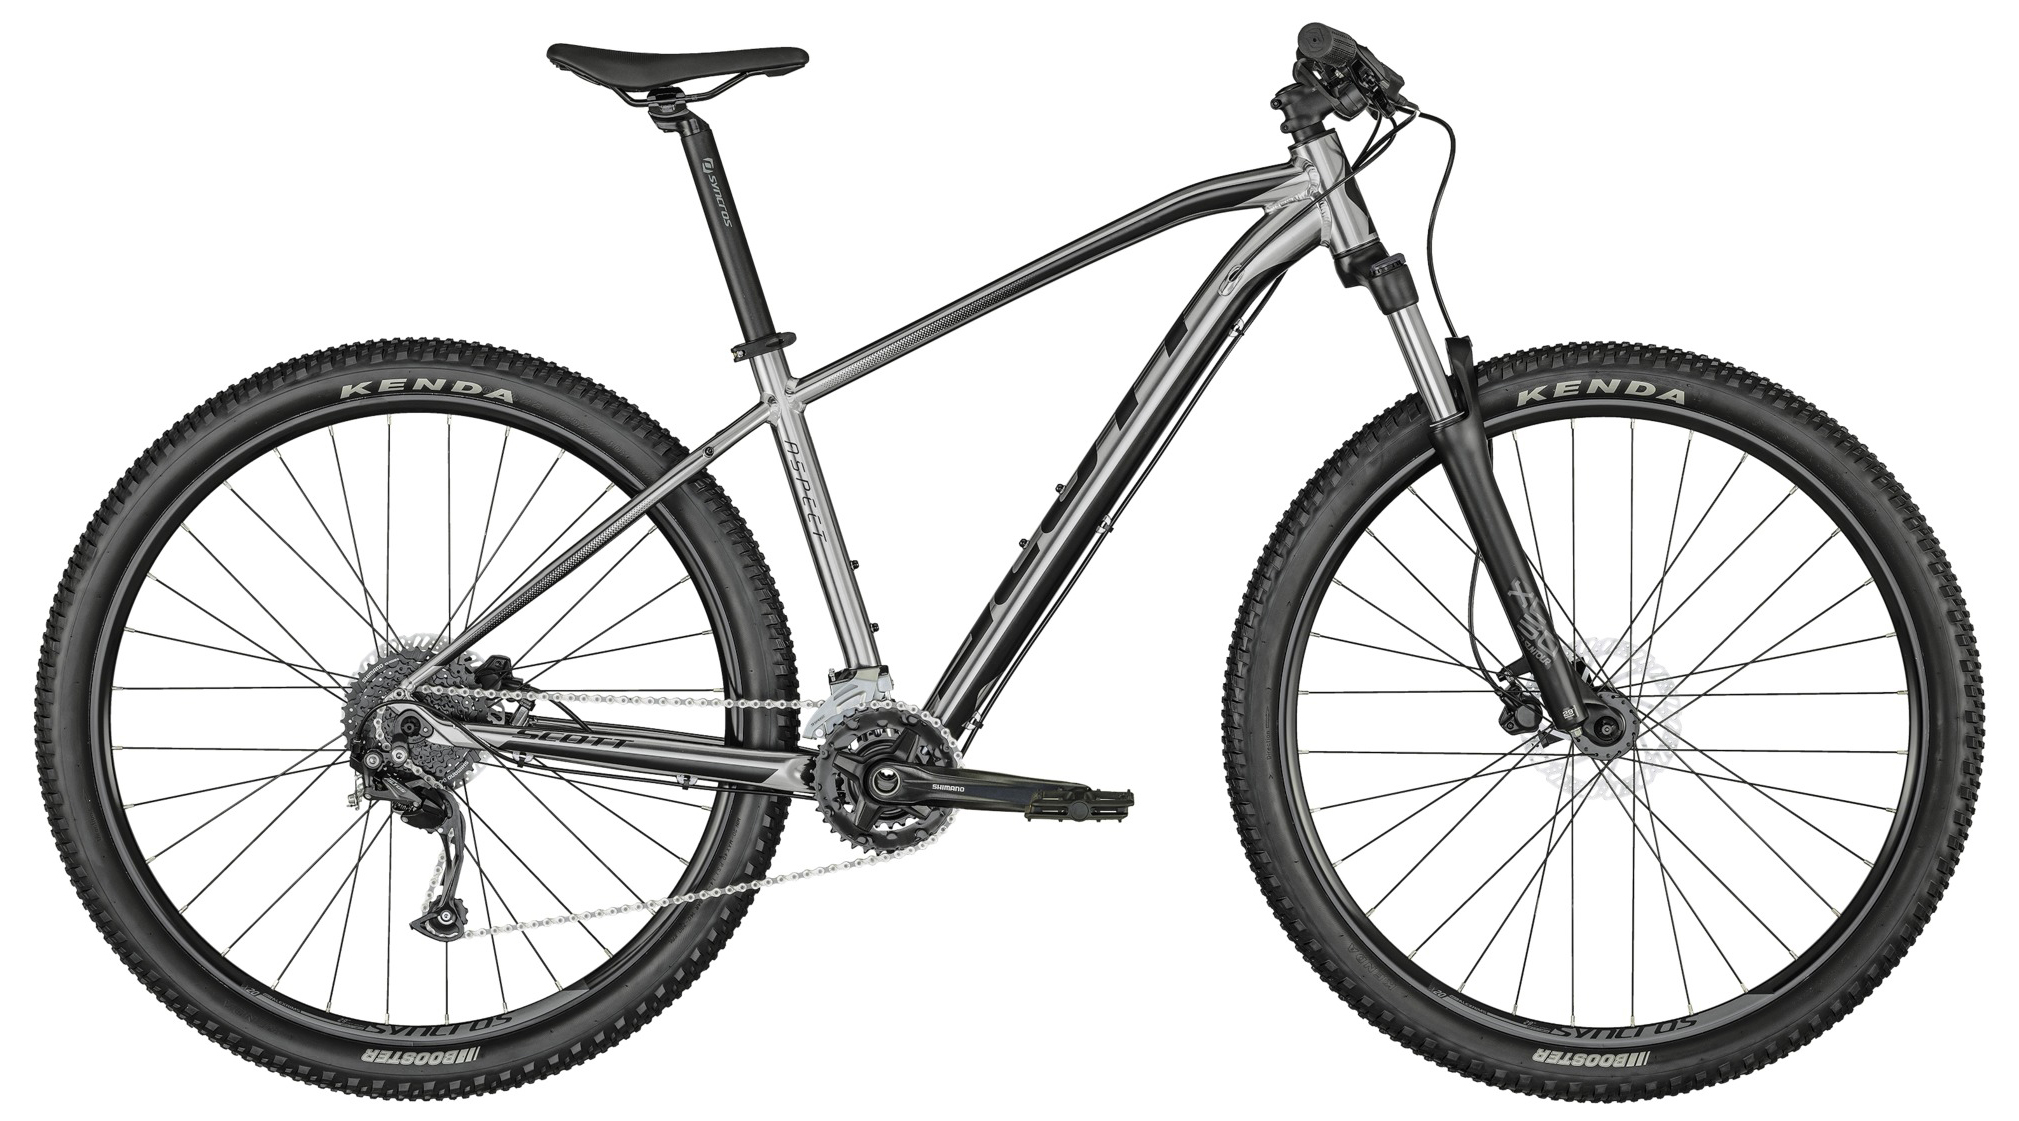  Отзывы о Горном велосипеде Scott Aspect 950 2022